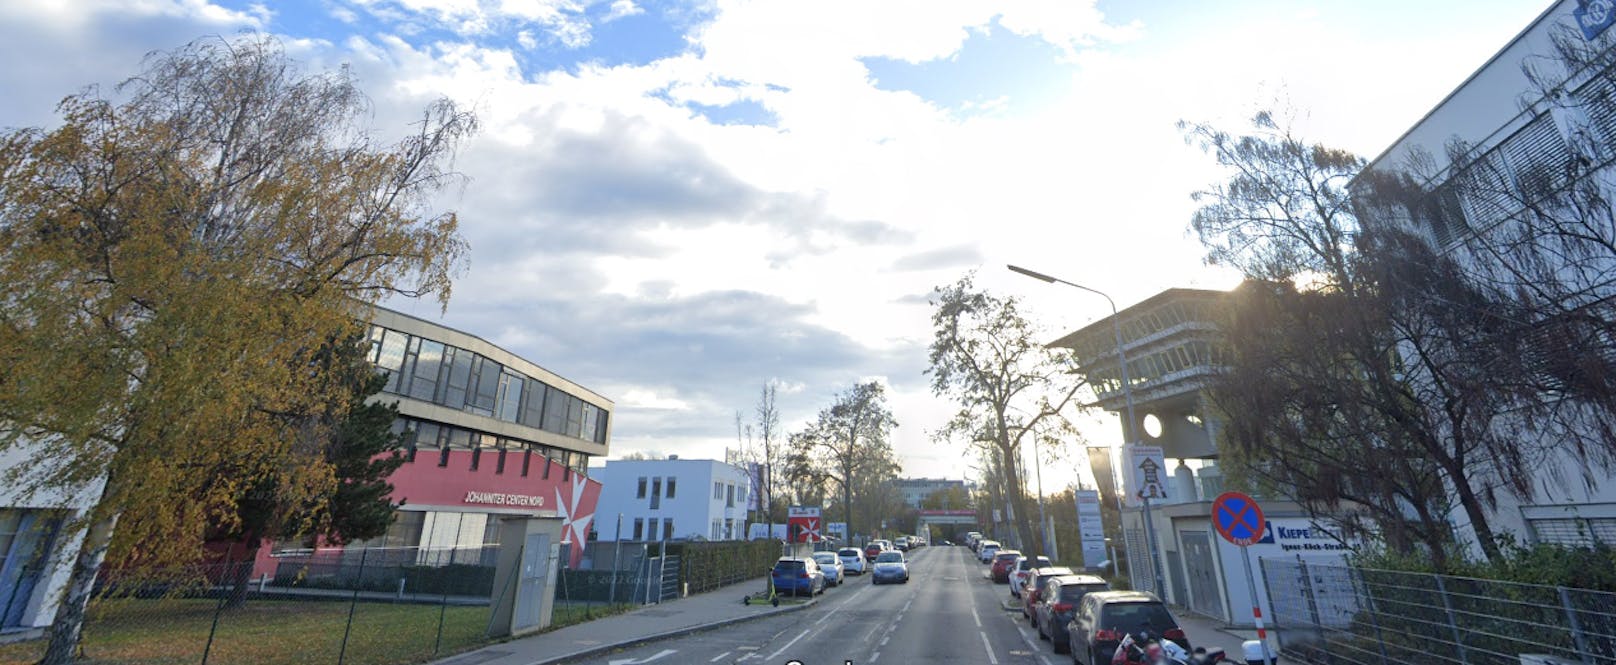 BMW rammte Radlerin: "48er" stoppten Lenker in Wien